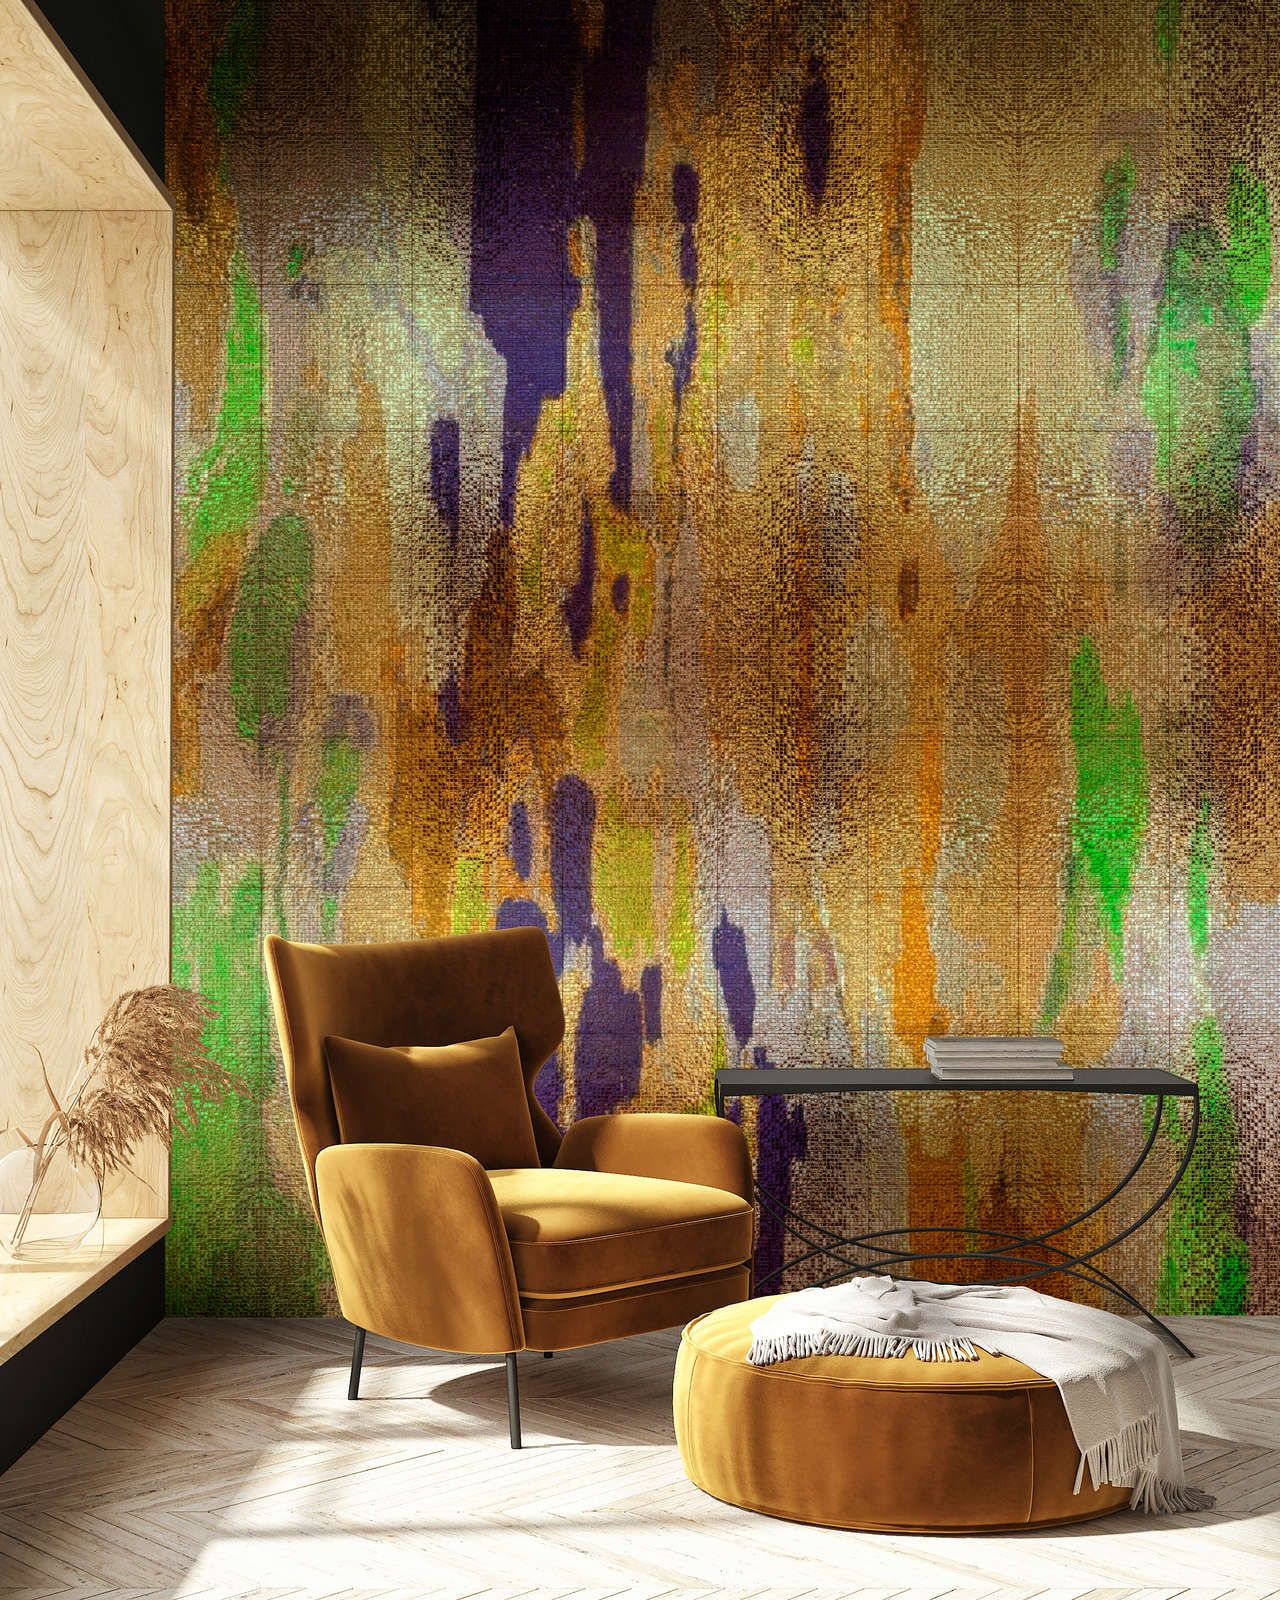             papier peint en papier panoramique »marielle 1« - dégradé de couleurs lilas, or, vert avec structure mosaïque - intissé lisse, légèrement nacré
        